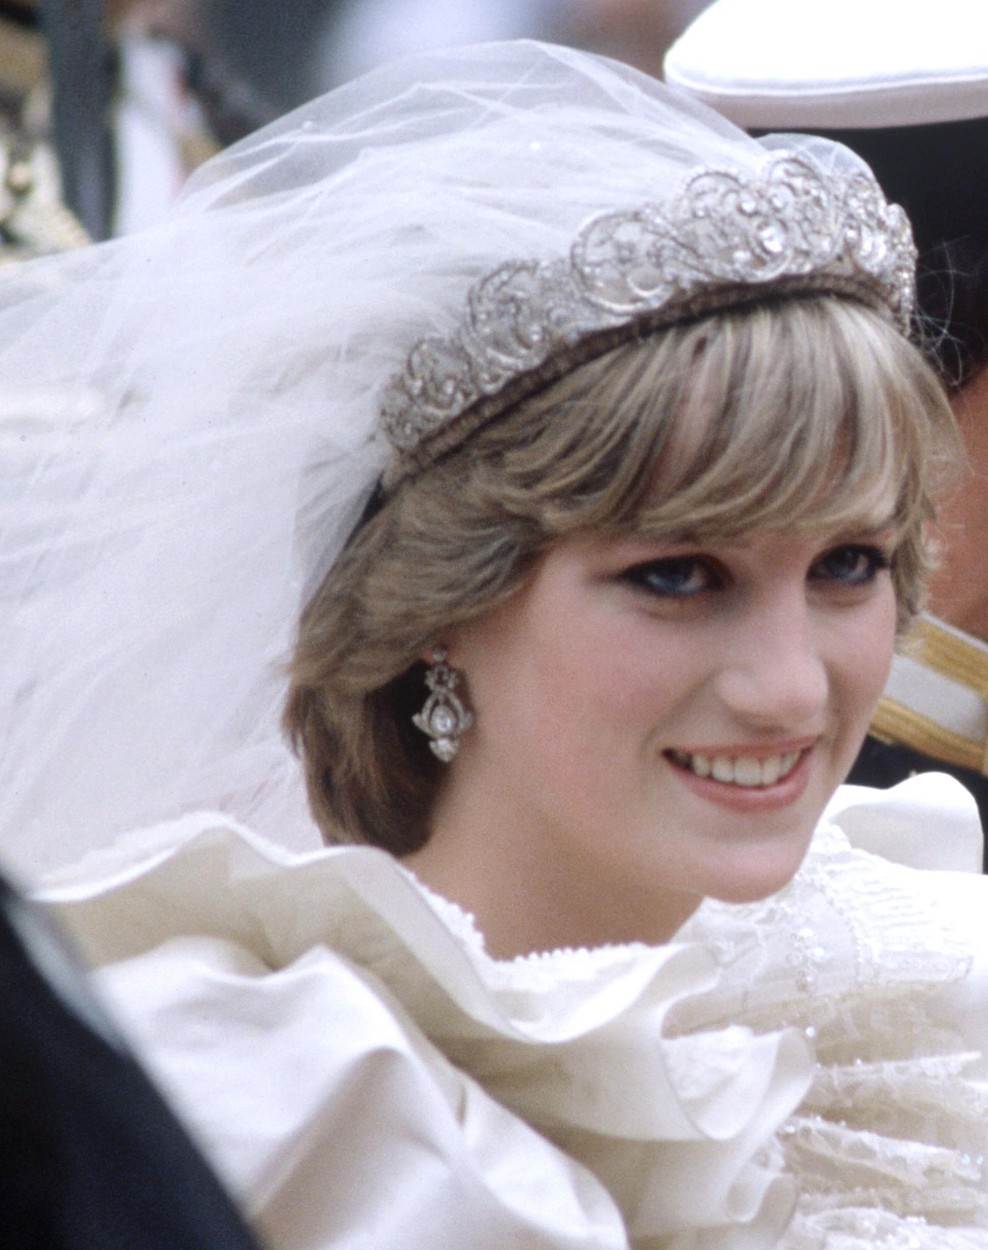 Princeza Diana na vjenčanju s princem Charlesom nije nosila kraljičinu krunu